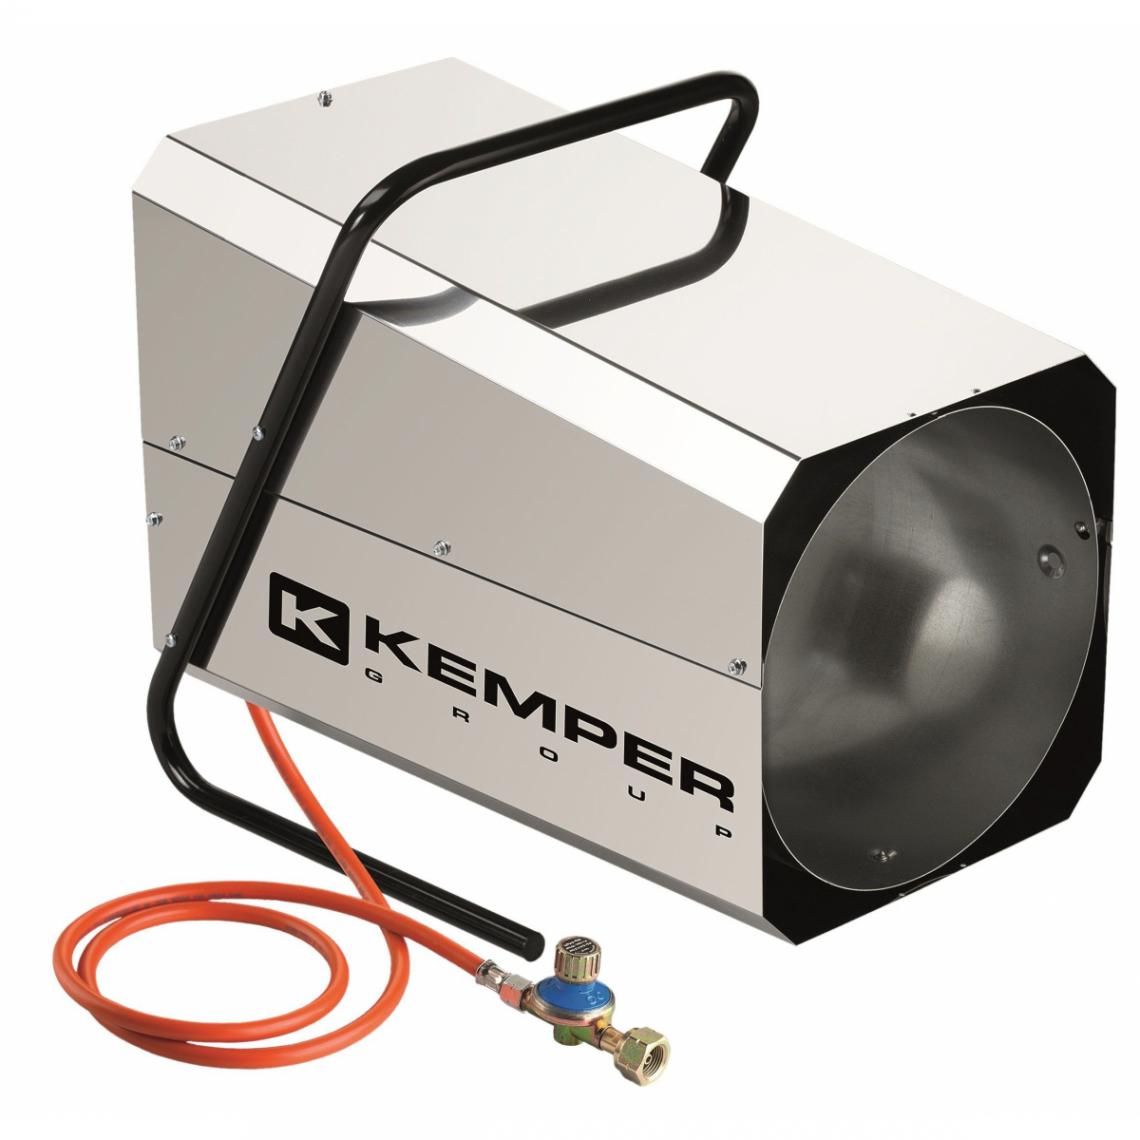 Kemper - Générateur d'air chaud à gaz 42KW Kemper réglable + tuyau et détendeur - Chauffage à pétrole / gaz